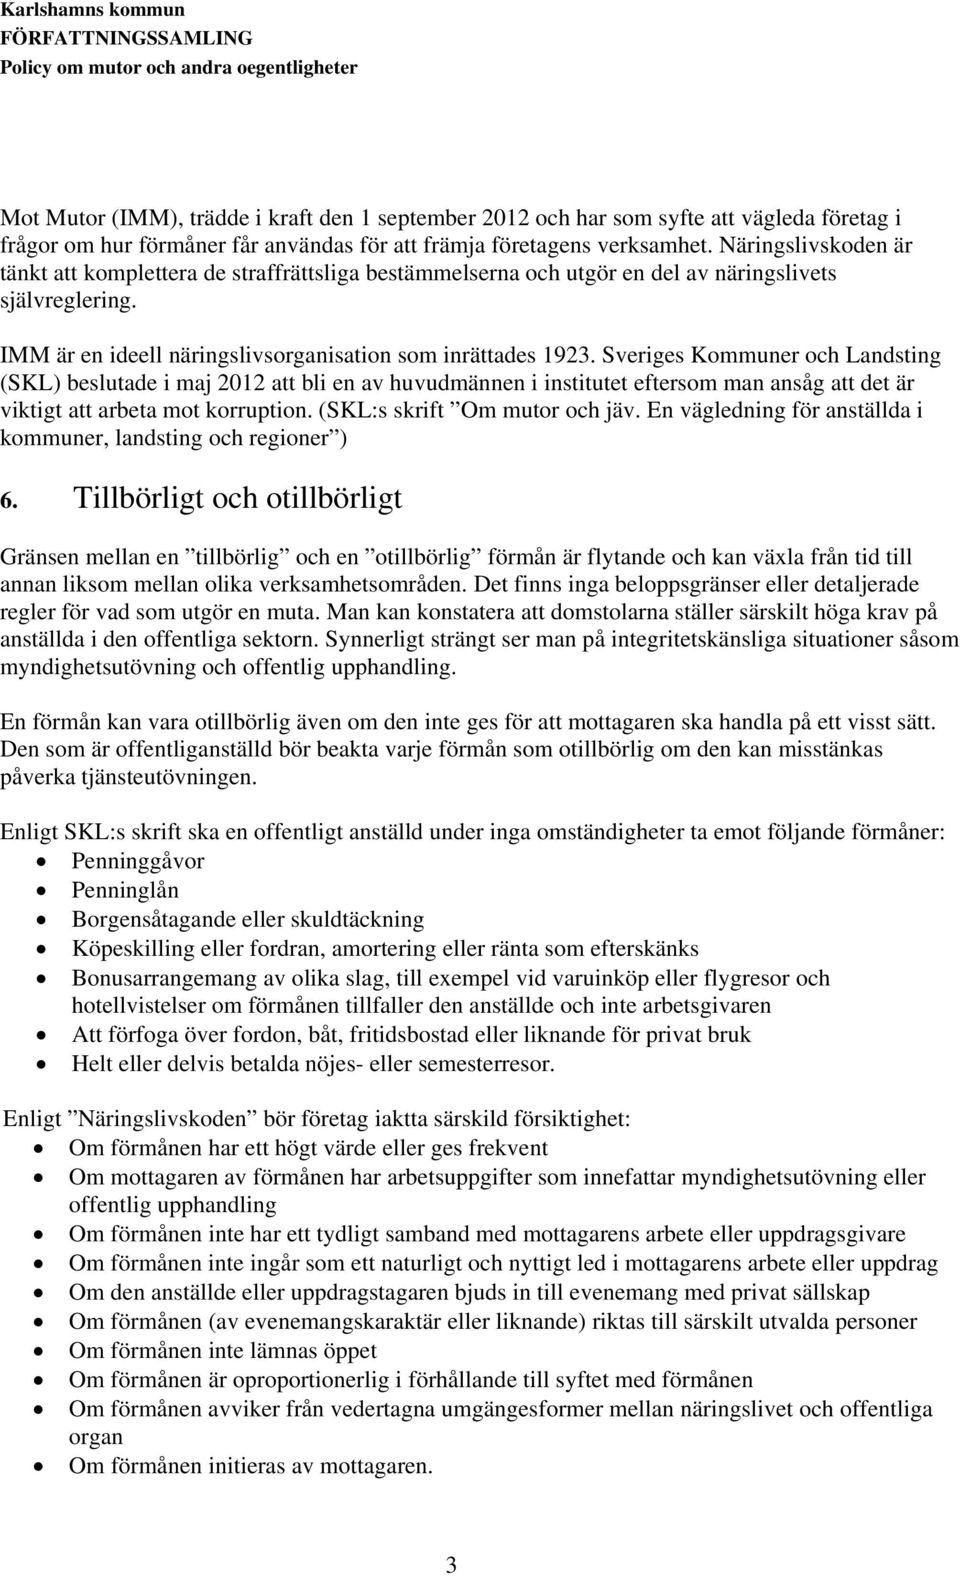 Sveriges Kommuner och Landsting (SKL) beslutade i maj 2012 att bli en av huvudmännen i institutet eftersom man ansåg att det är viktigt att arbeta mot korruption. (SKL:s skrift Om mutor och jäv.